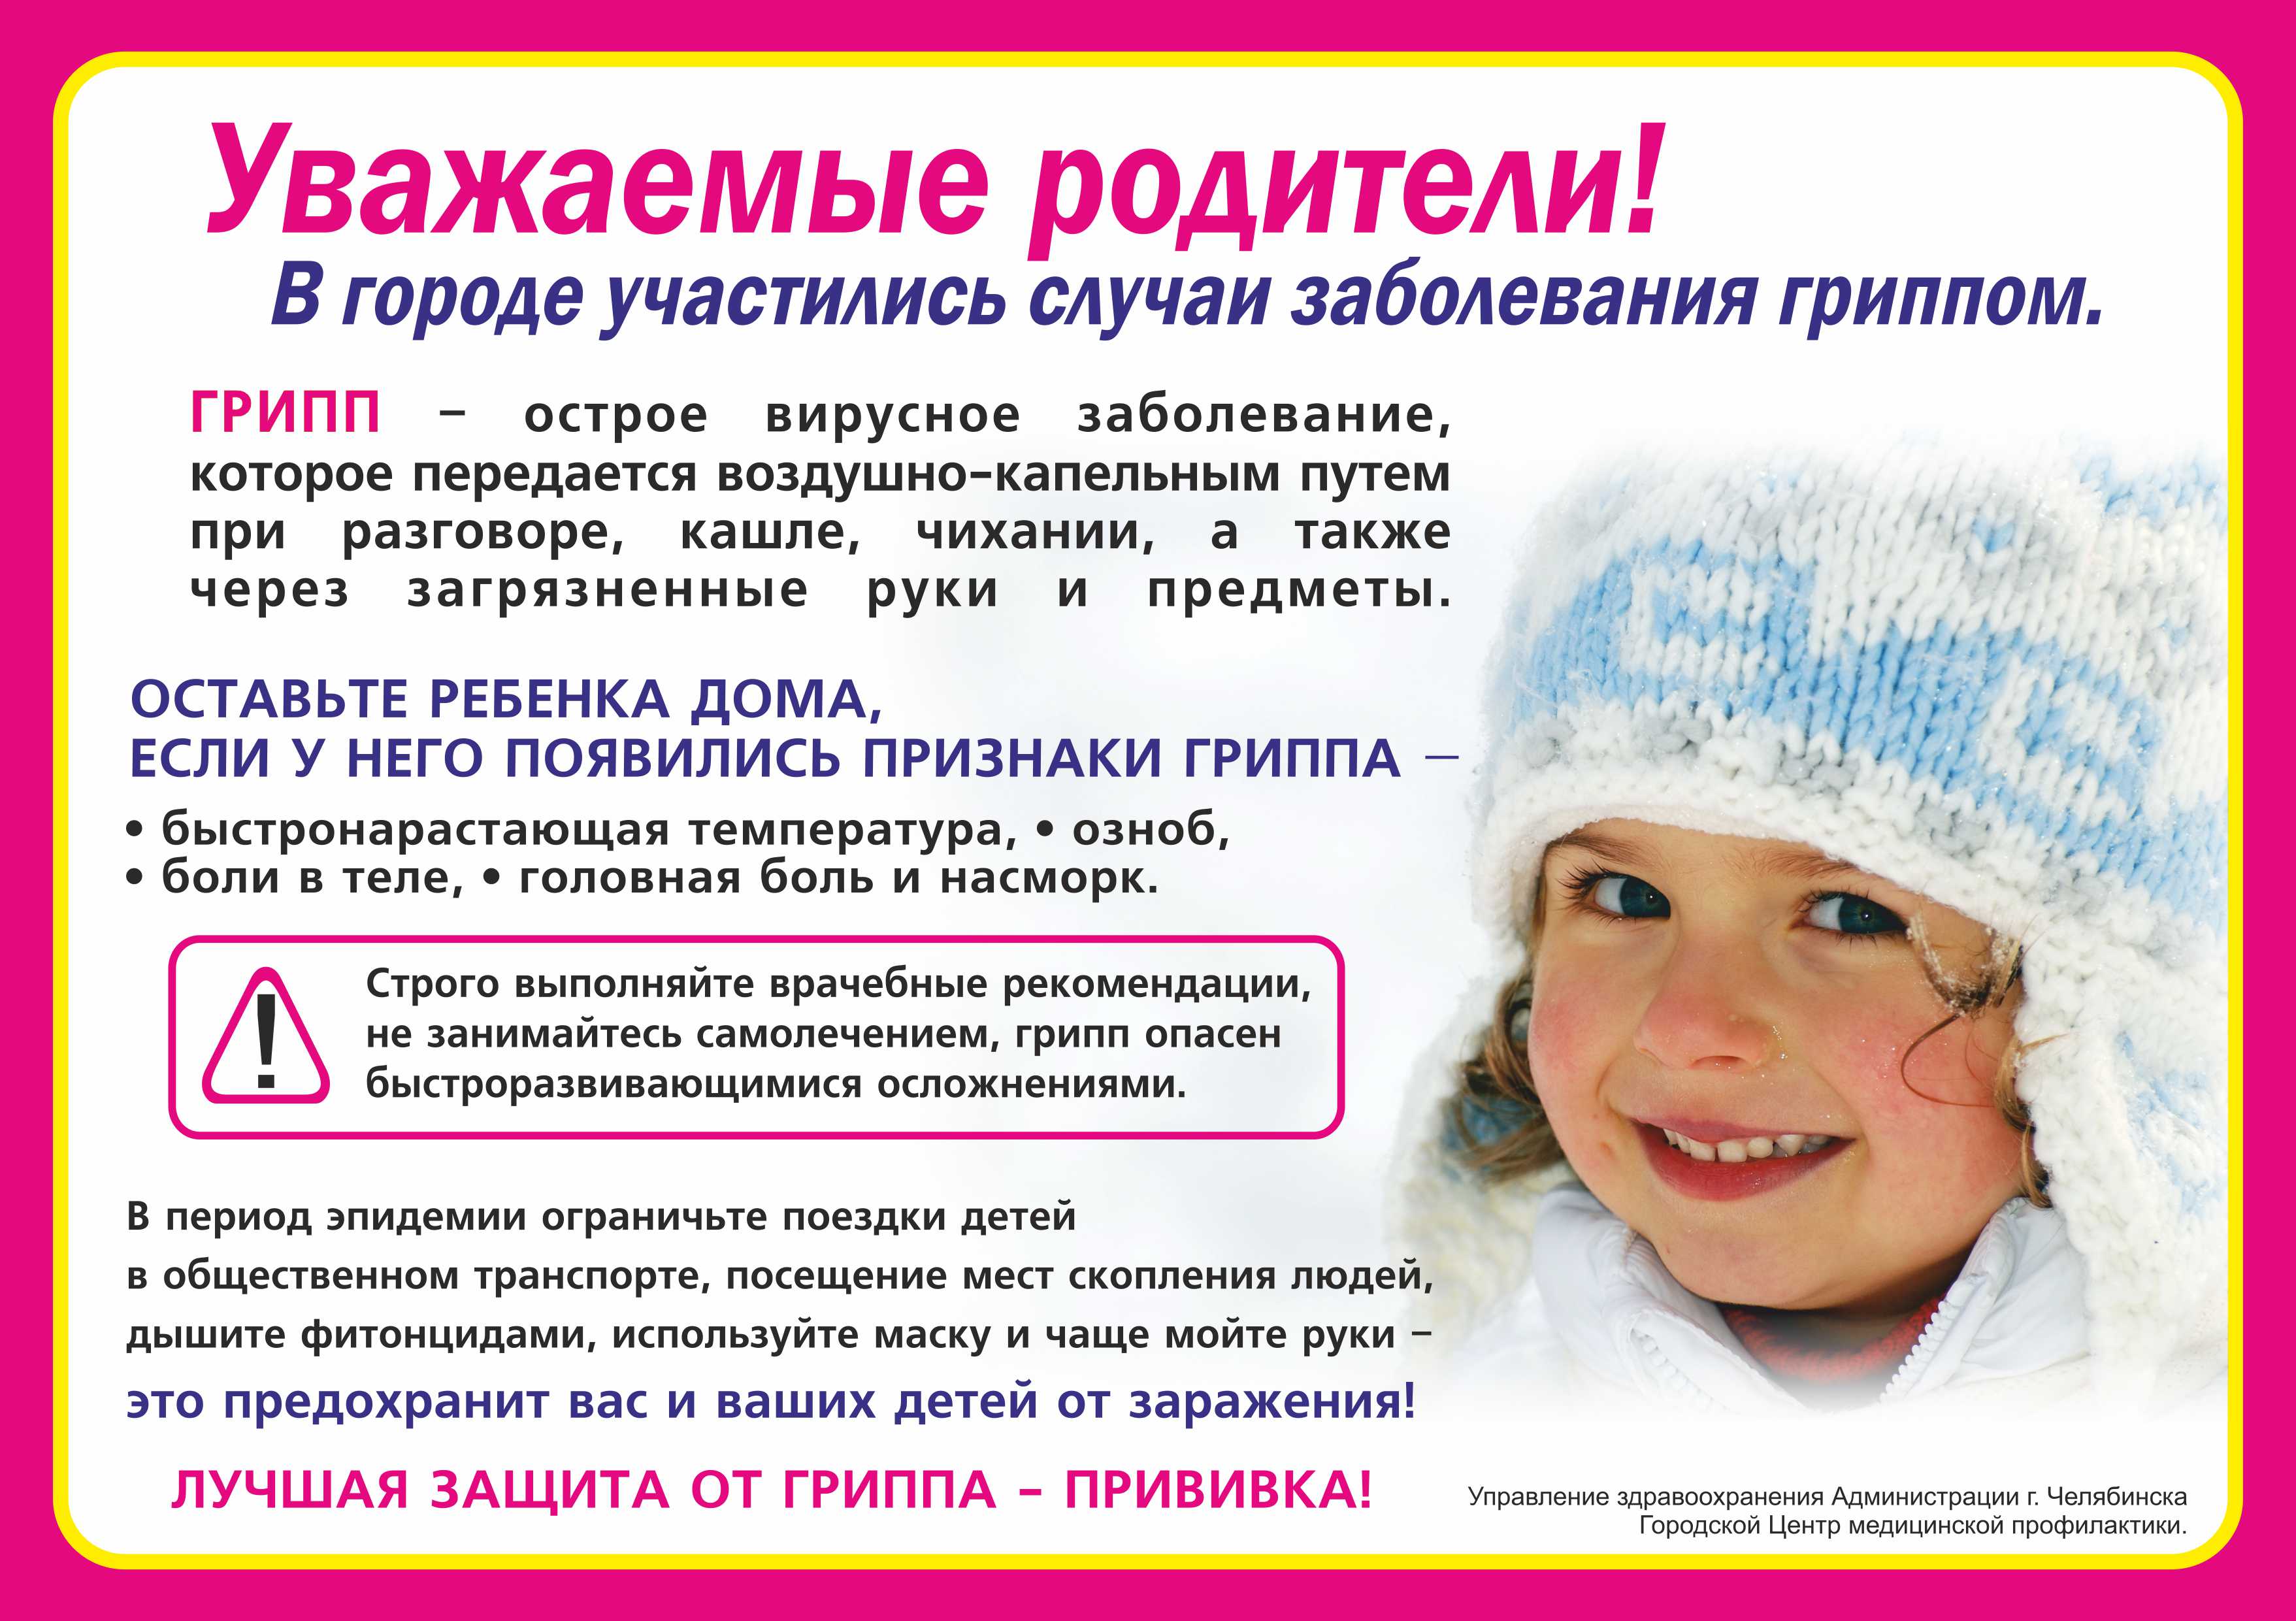 Если сопли можно делать прививку. Профилактика простудных заболеваний зимой. Уважаемые родители дети с признаками ОРВИ. Профилактика при гриппе. Профилактика ОРВИ памятка.